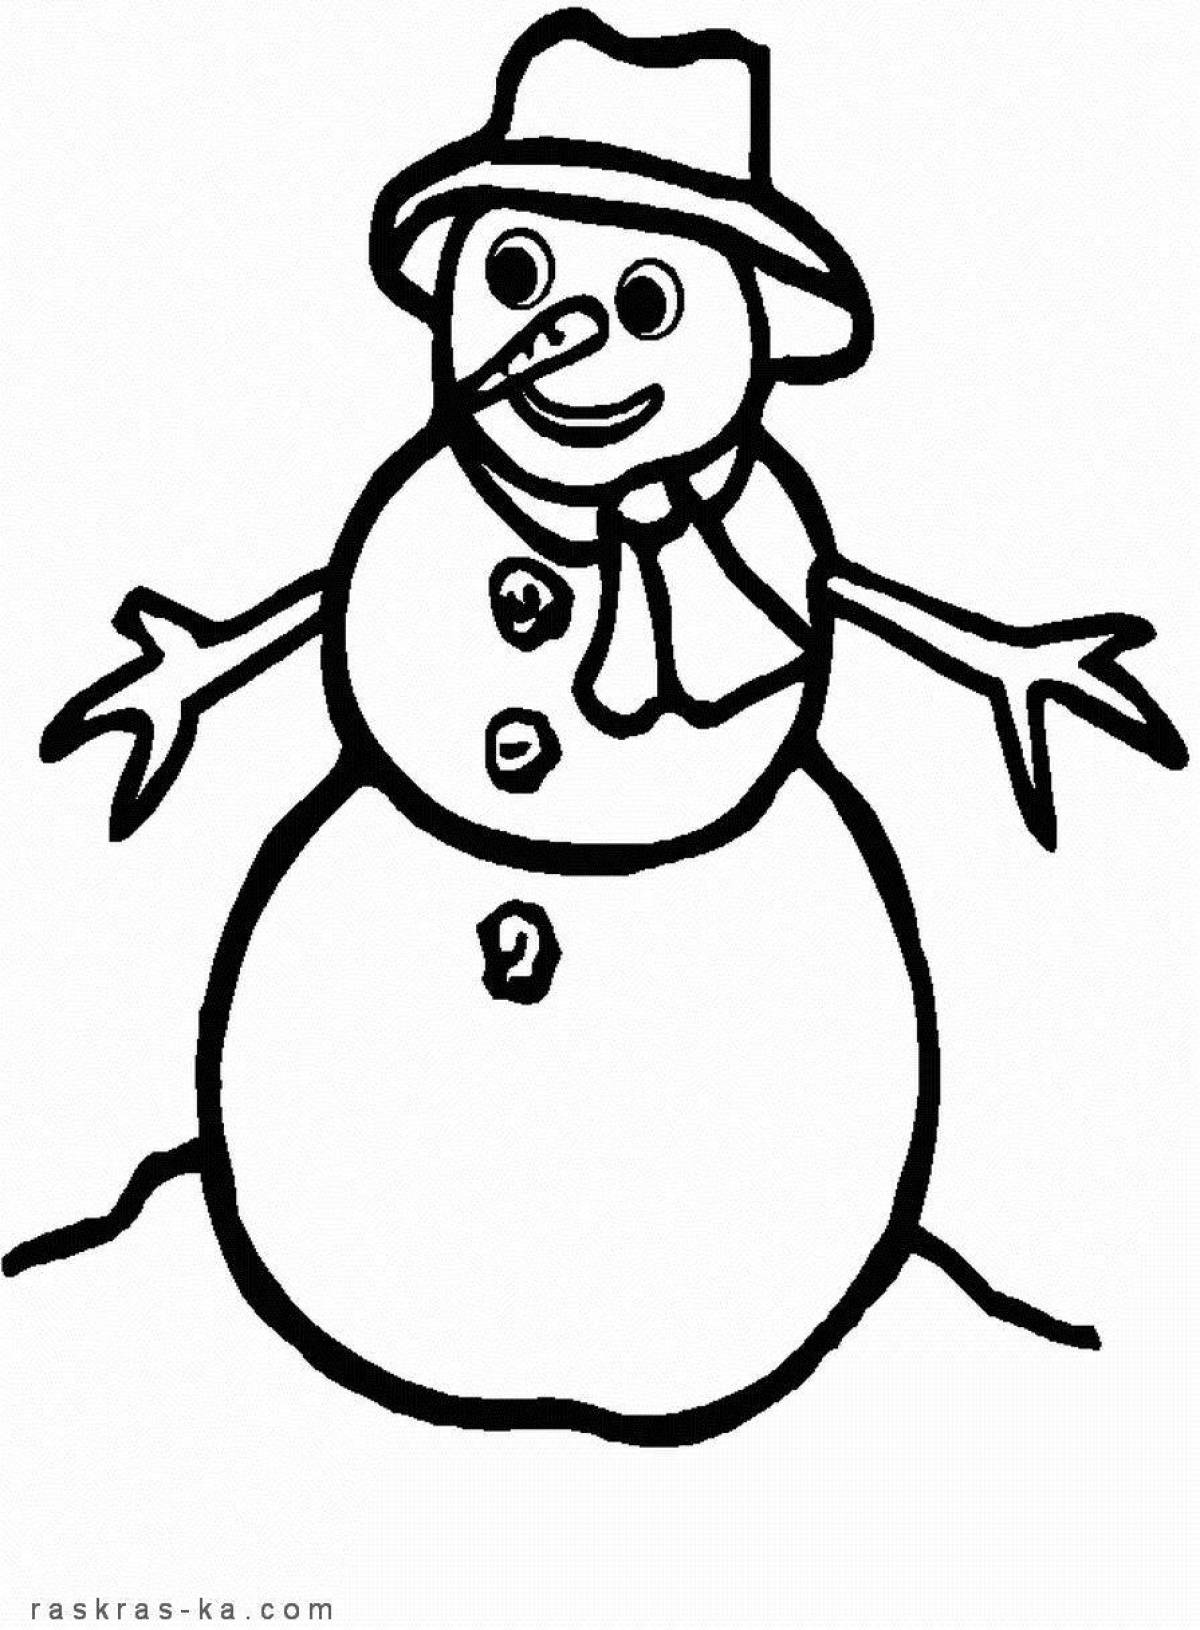 Светящаяся раскраска снеговик для детей 4-5 лет